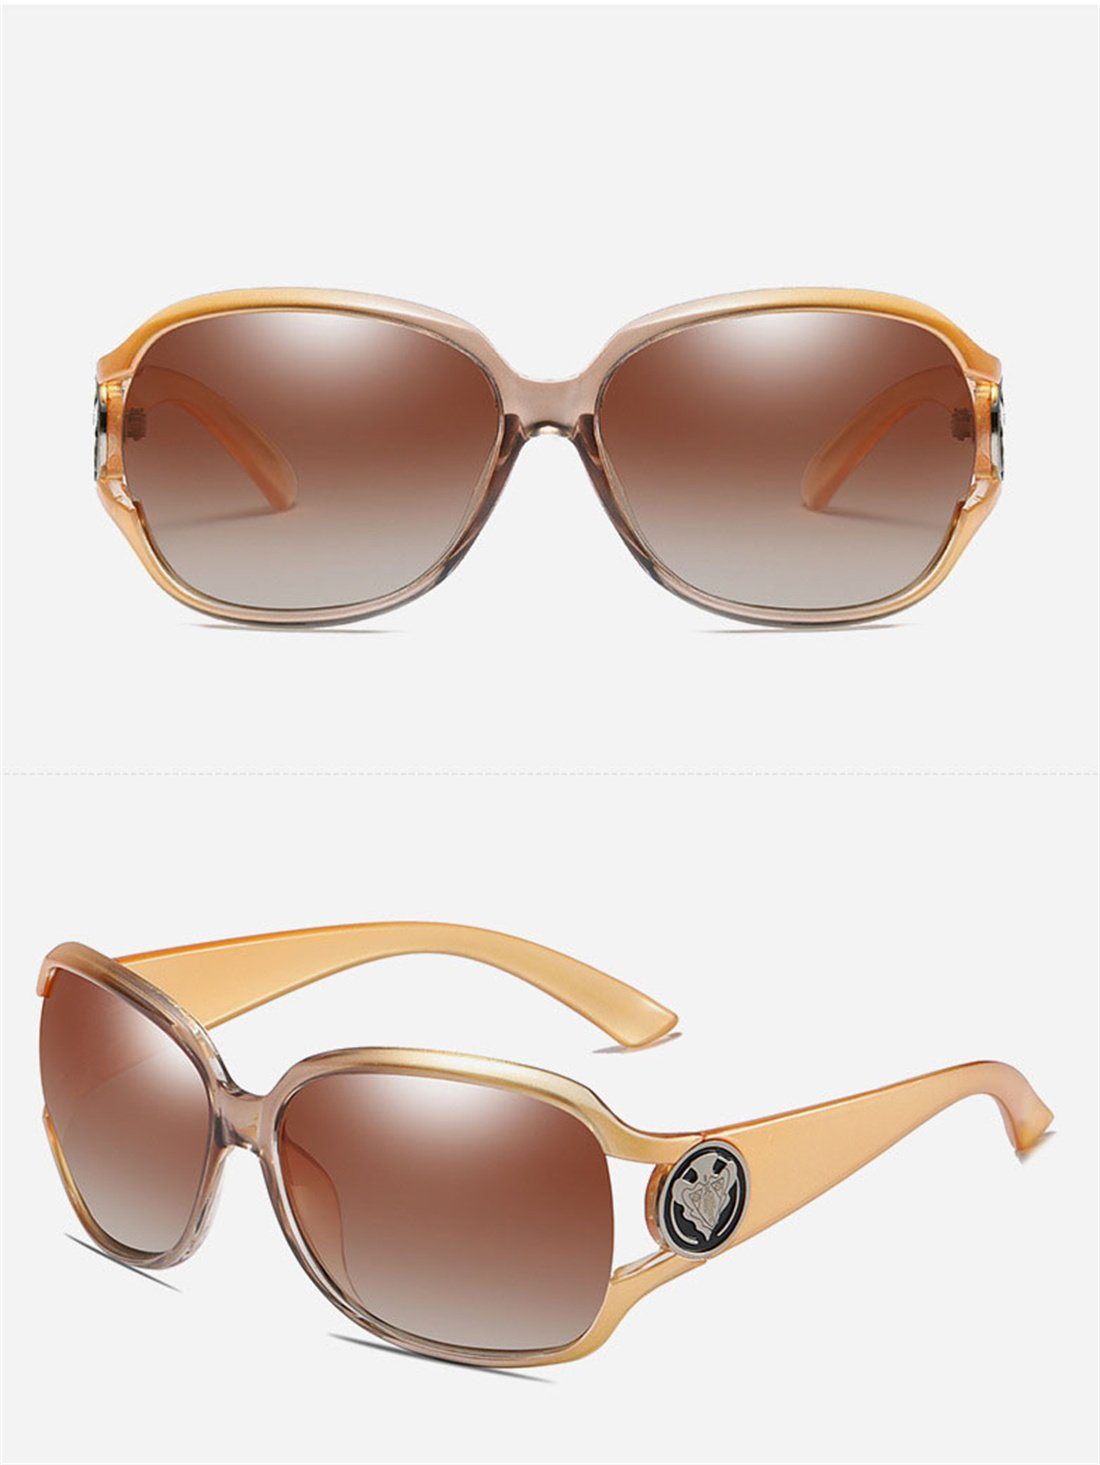 DÖRÖY Sonnenbrille Polarisierende Sonnenbrillen Outdoor-Sonnenbrillen C für Frauen